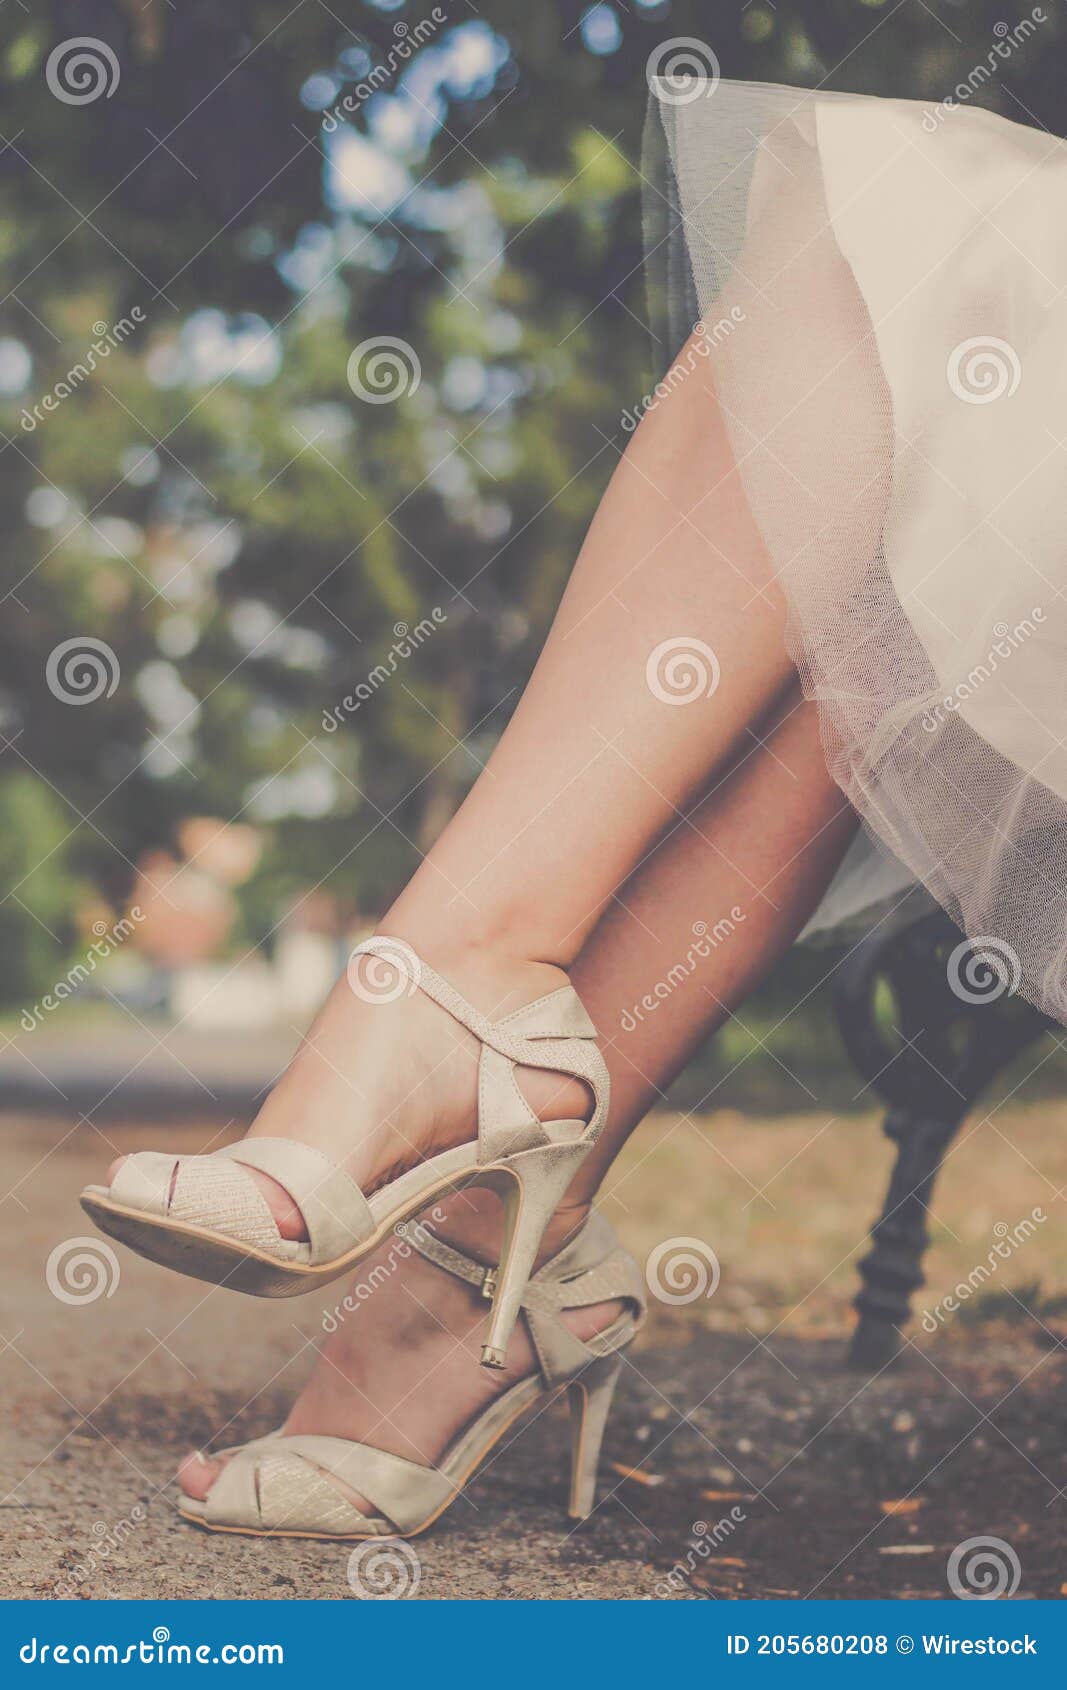 Novia Con Vestido De Blanco Y Con Sandalias De Tacón Alto En Un Banco De Un Parque Foto de archivo - Imagen de sandalia, boda: 205680208